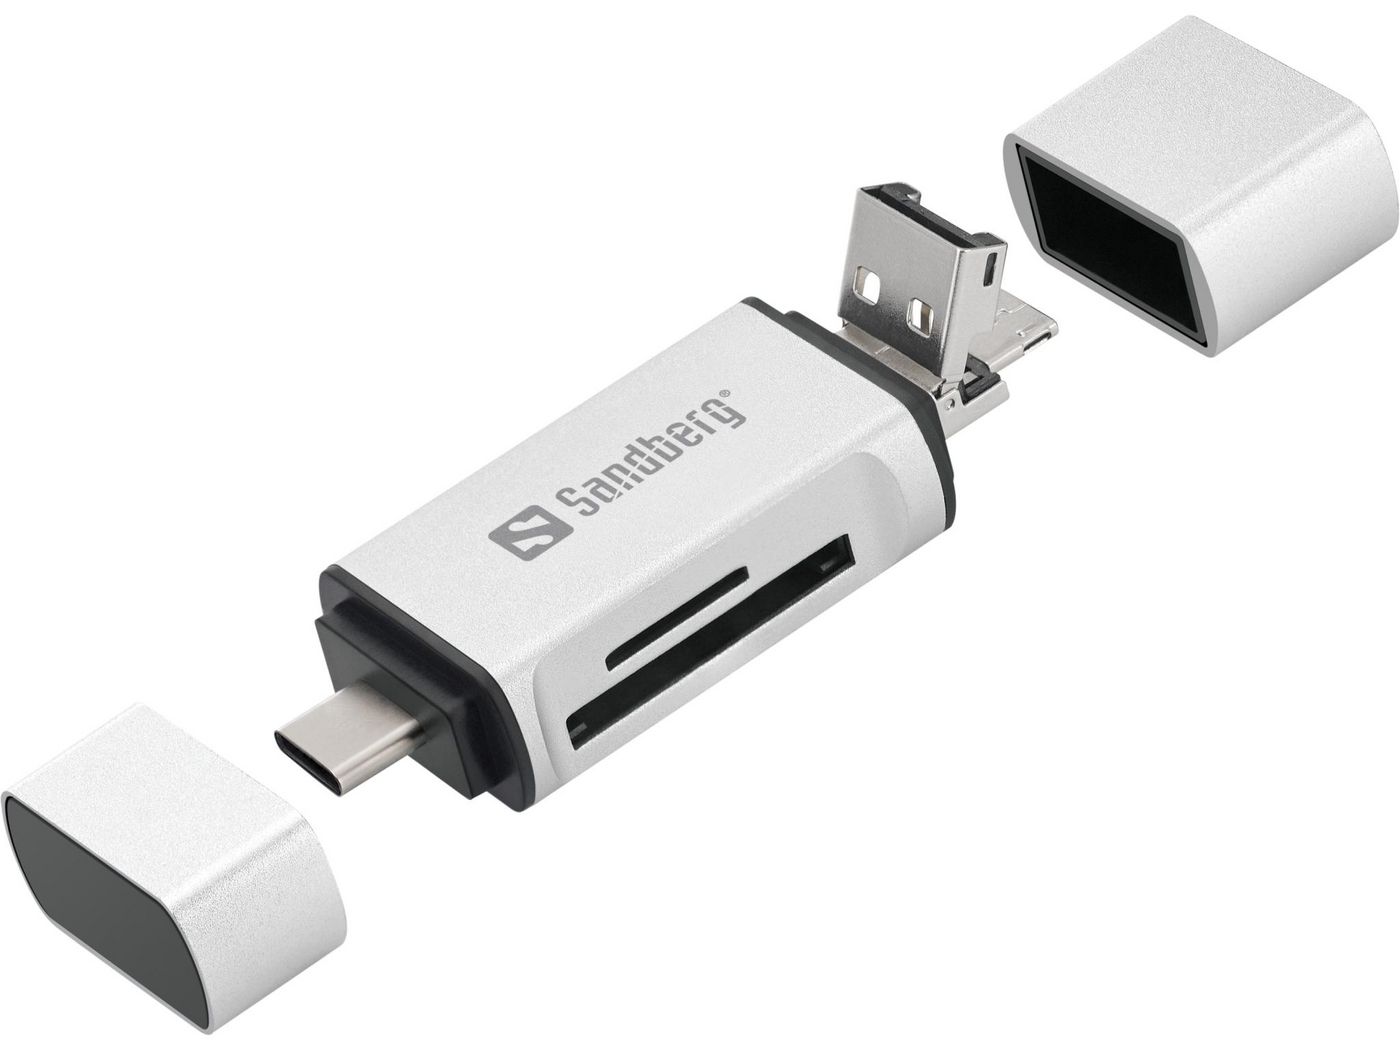 USB-C + USB + MicroUSB card reader